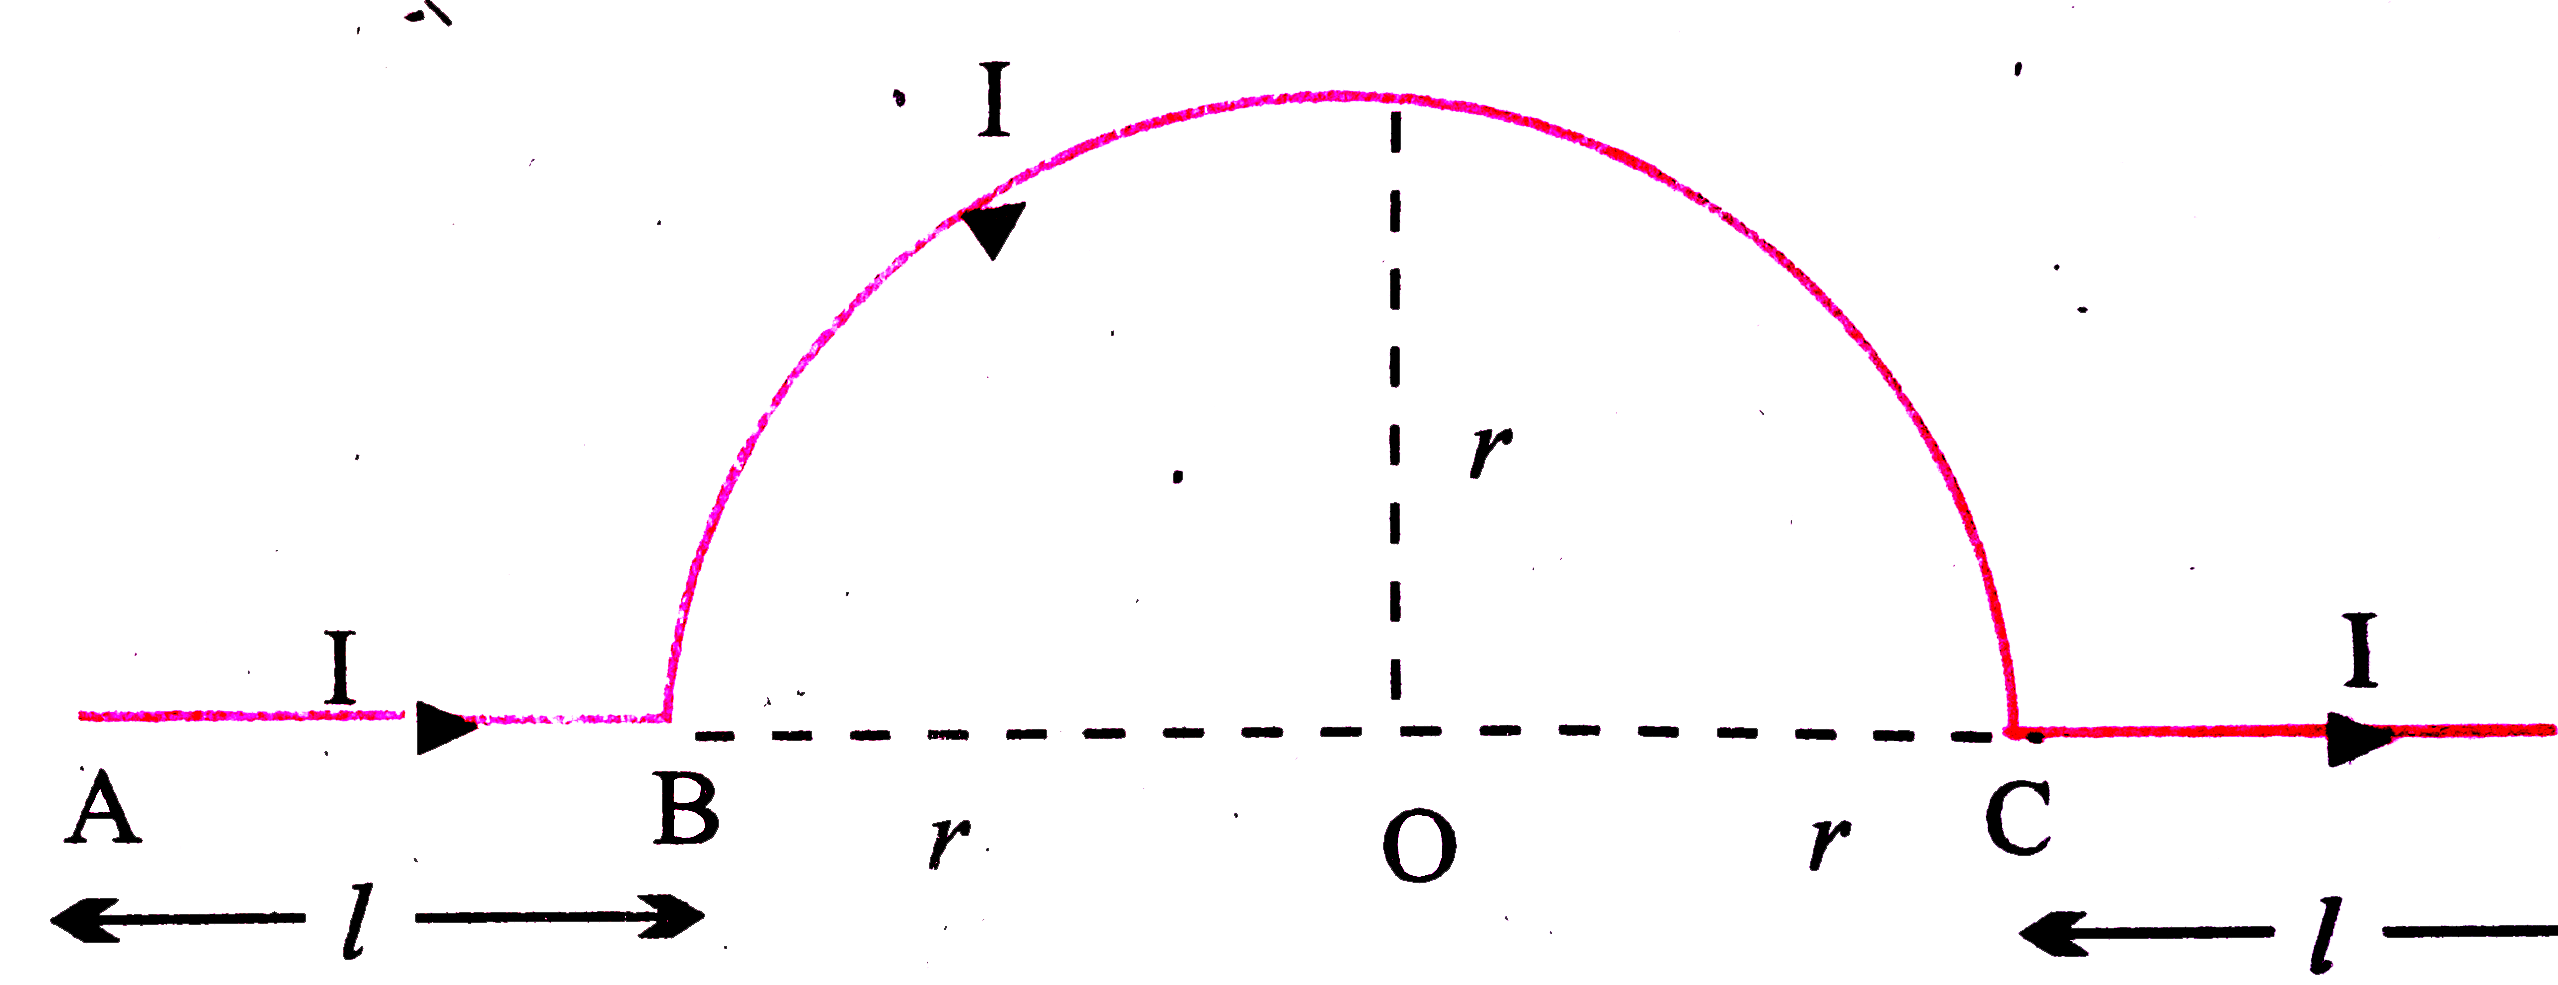 निम्न चित्र में विभिन्न स्थितियों में केंद्र O पर चुंबकीय क्षेत्र की तीव्रता का मान ज्ञात कीजिए -    (i) AB भाग में प्रवाहित धारा के कारण |   (ii)  पूर्ण खण्ड में प्रवाहित धारा के कारण ।